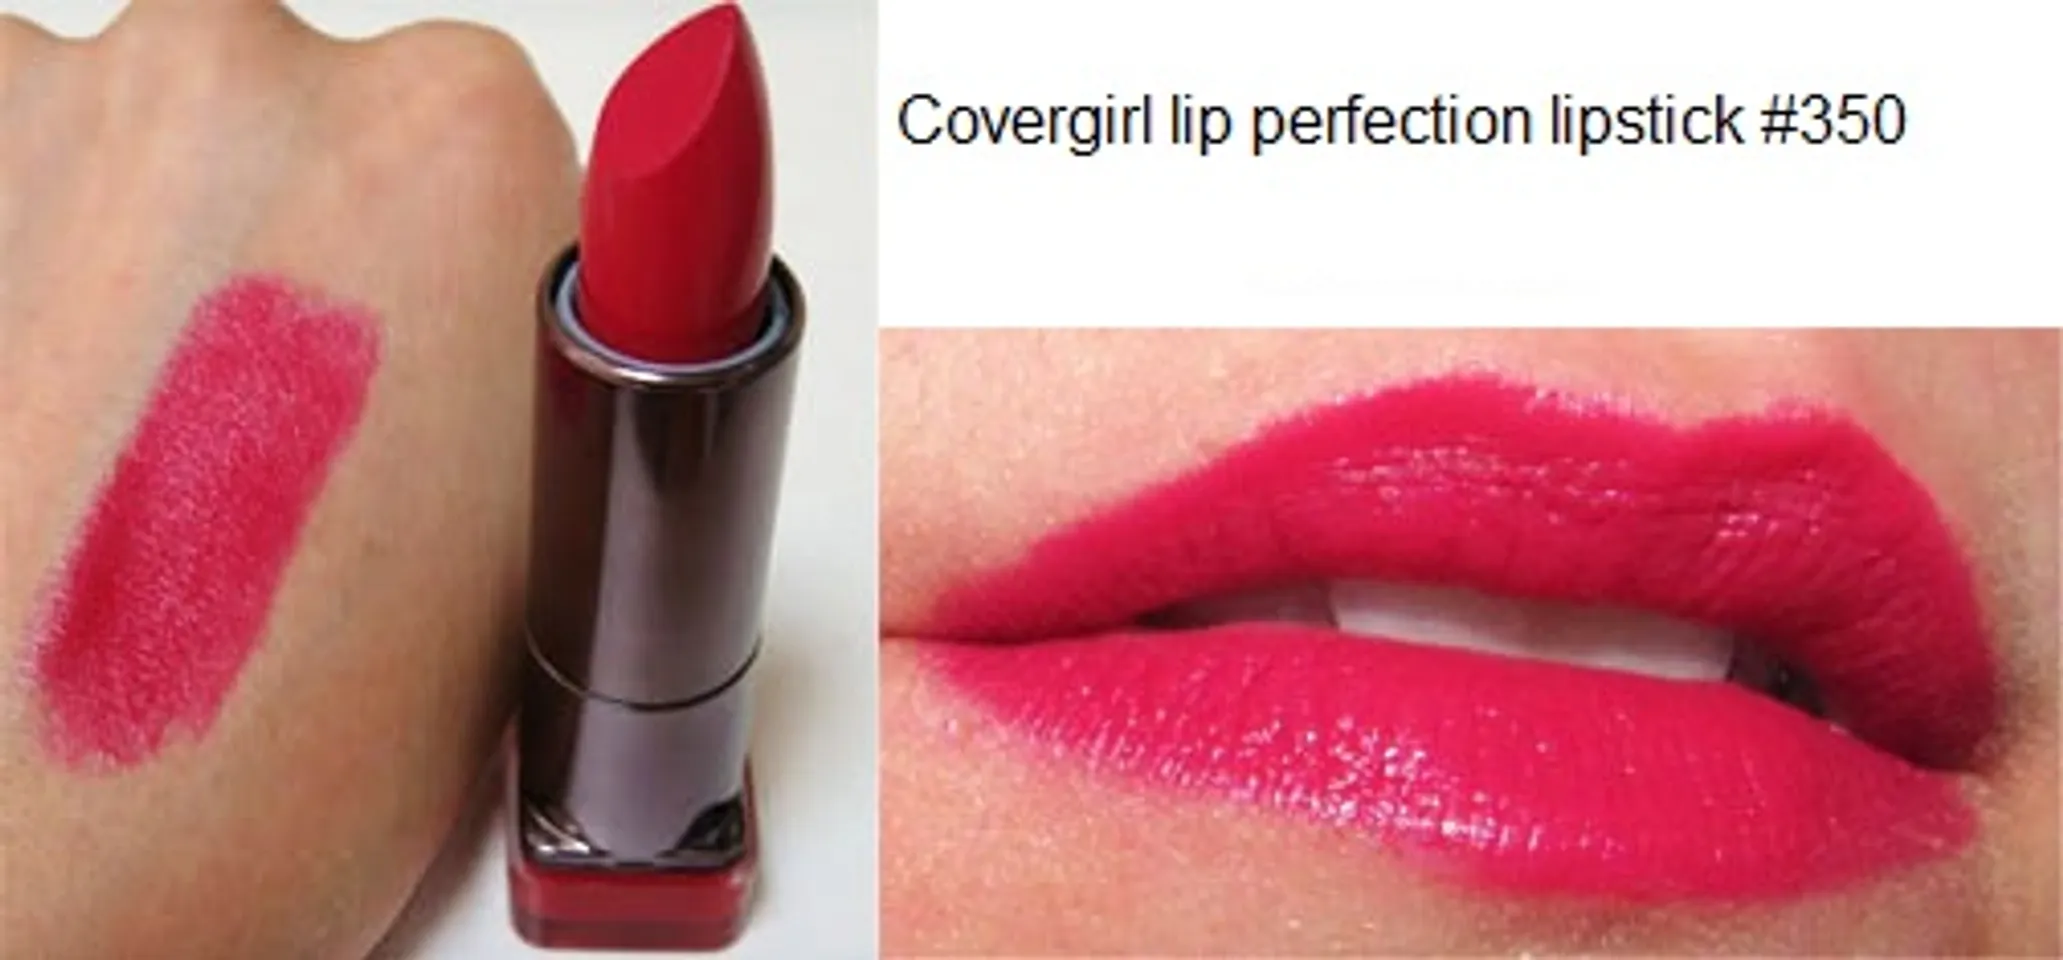 Son Cover girl Lip Perfection Lipstick chứa Protein 2